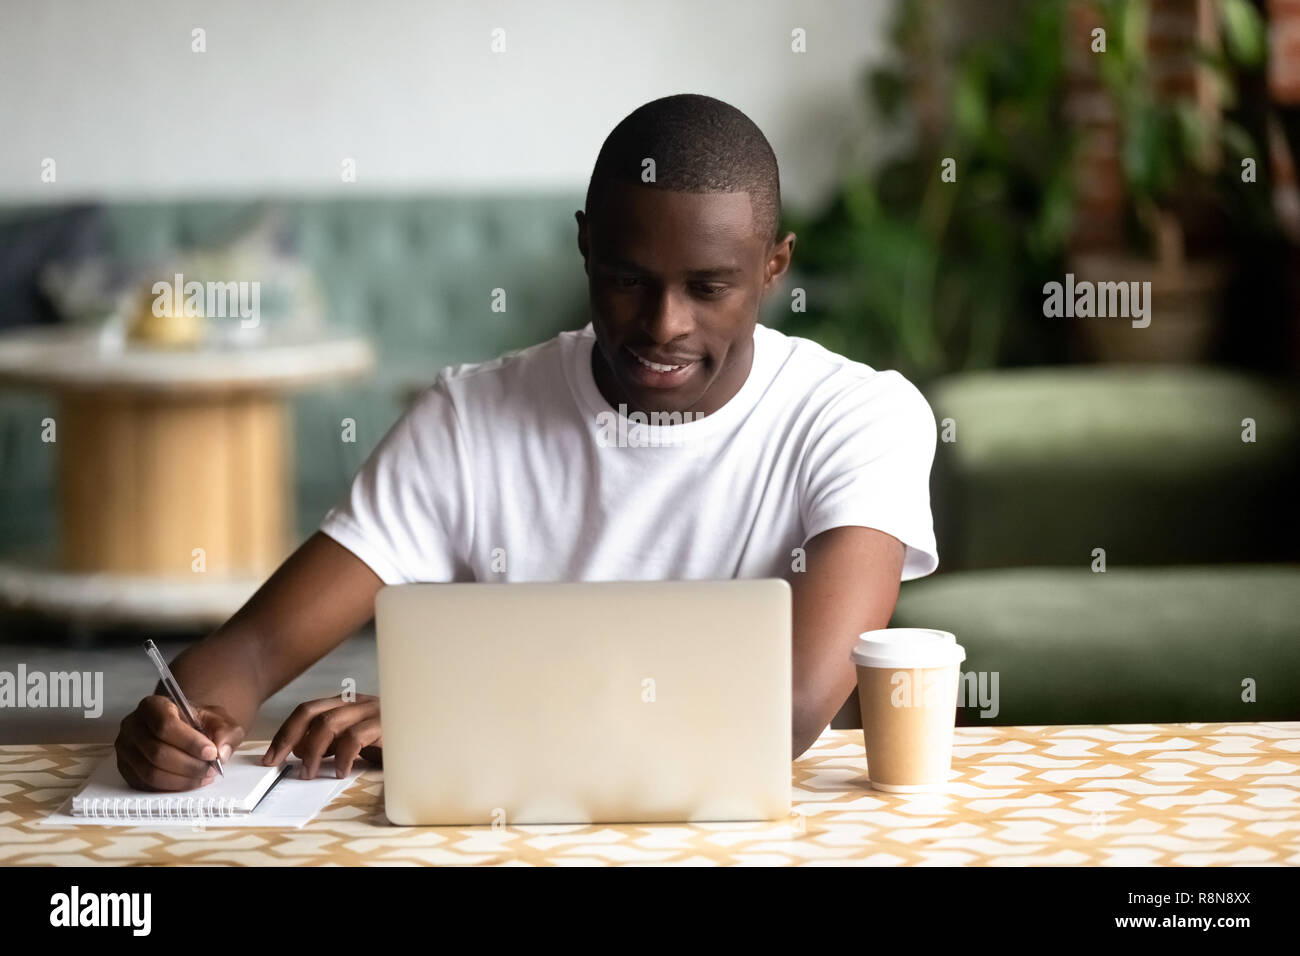 Smiling African American man using laptop, making notes Stock Photo